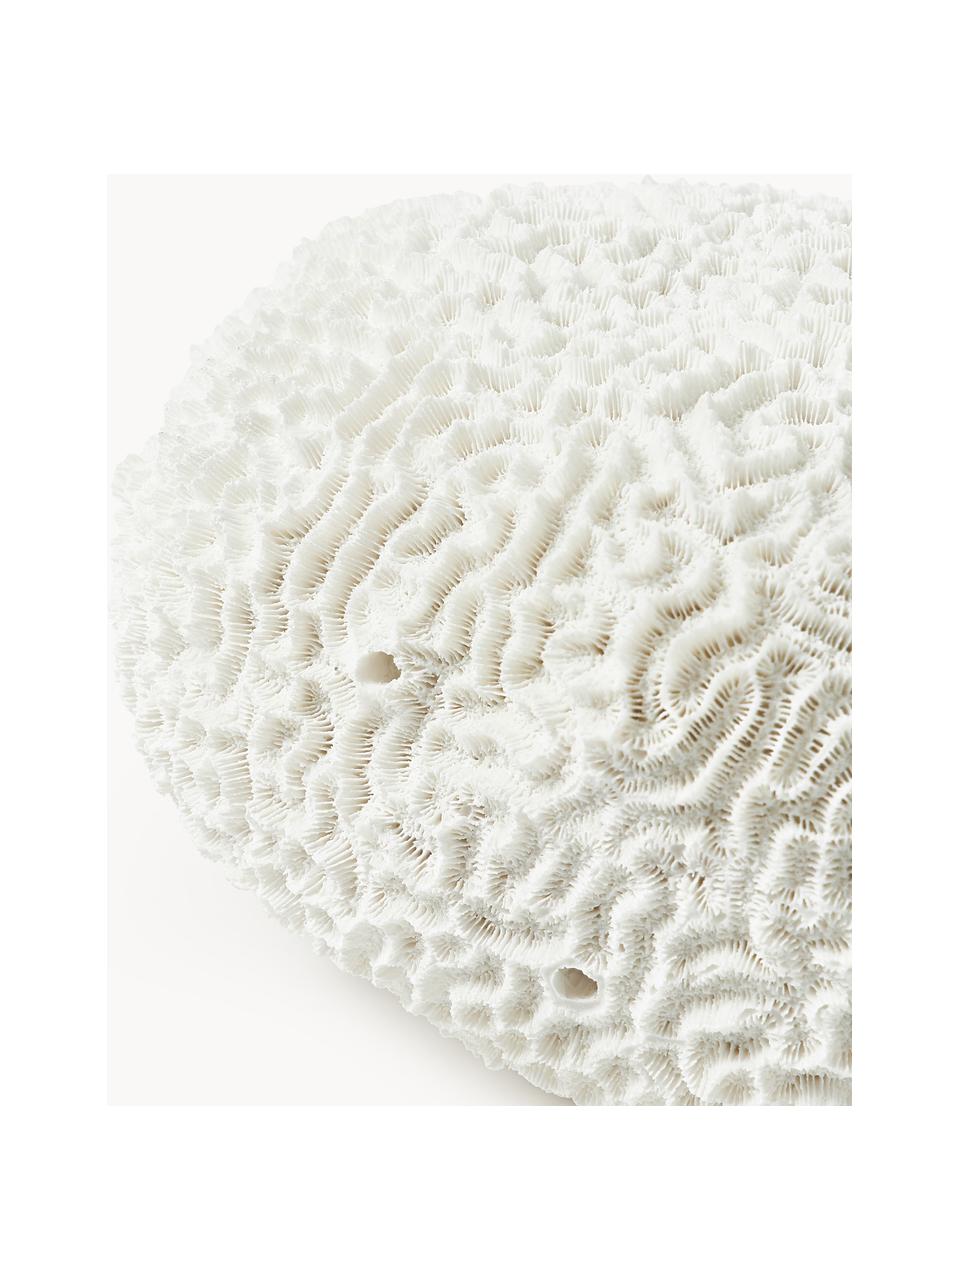 Dekoracja Coral, Biały, S 18 x W 10 cm